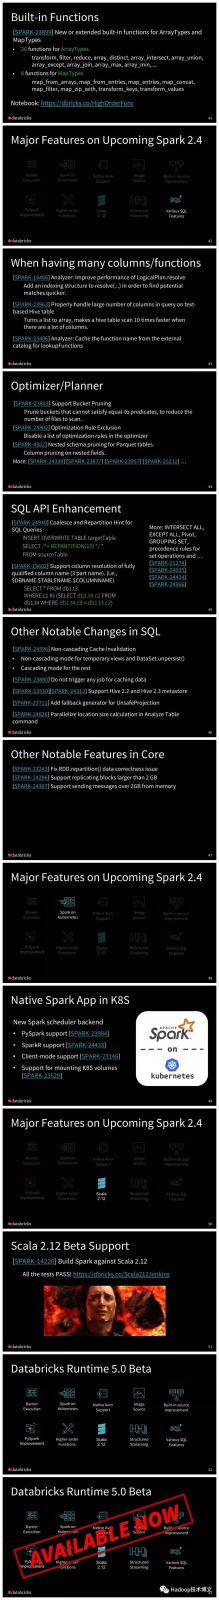 2018即将推出的Apache Spark 2.4都有哪些新功能